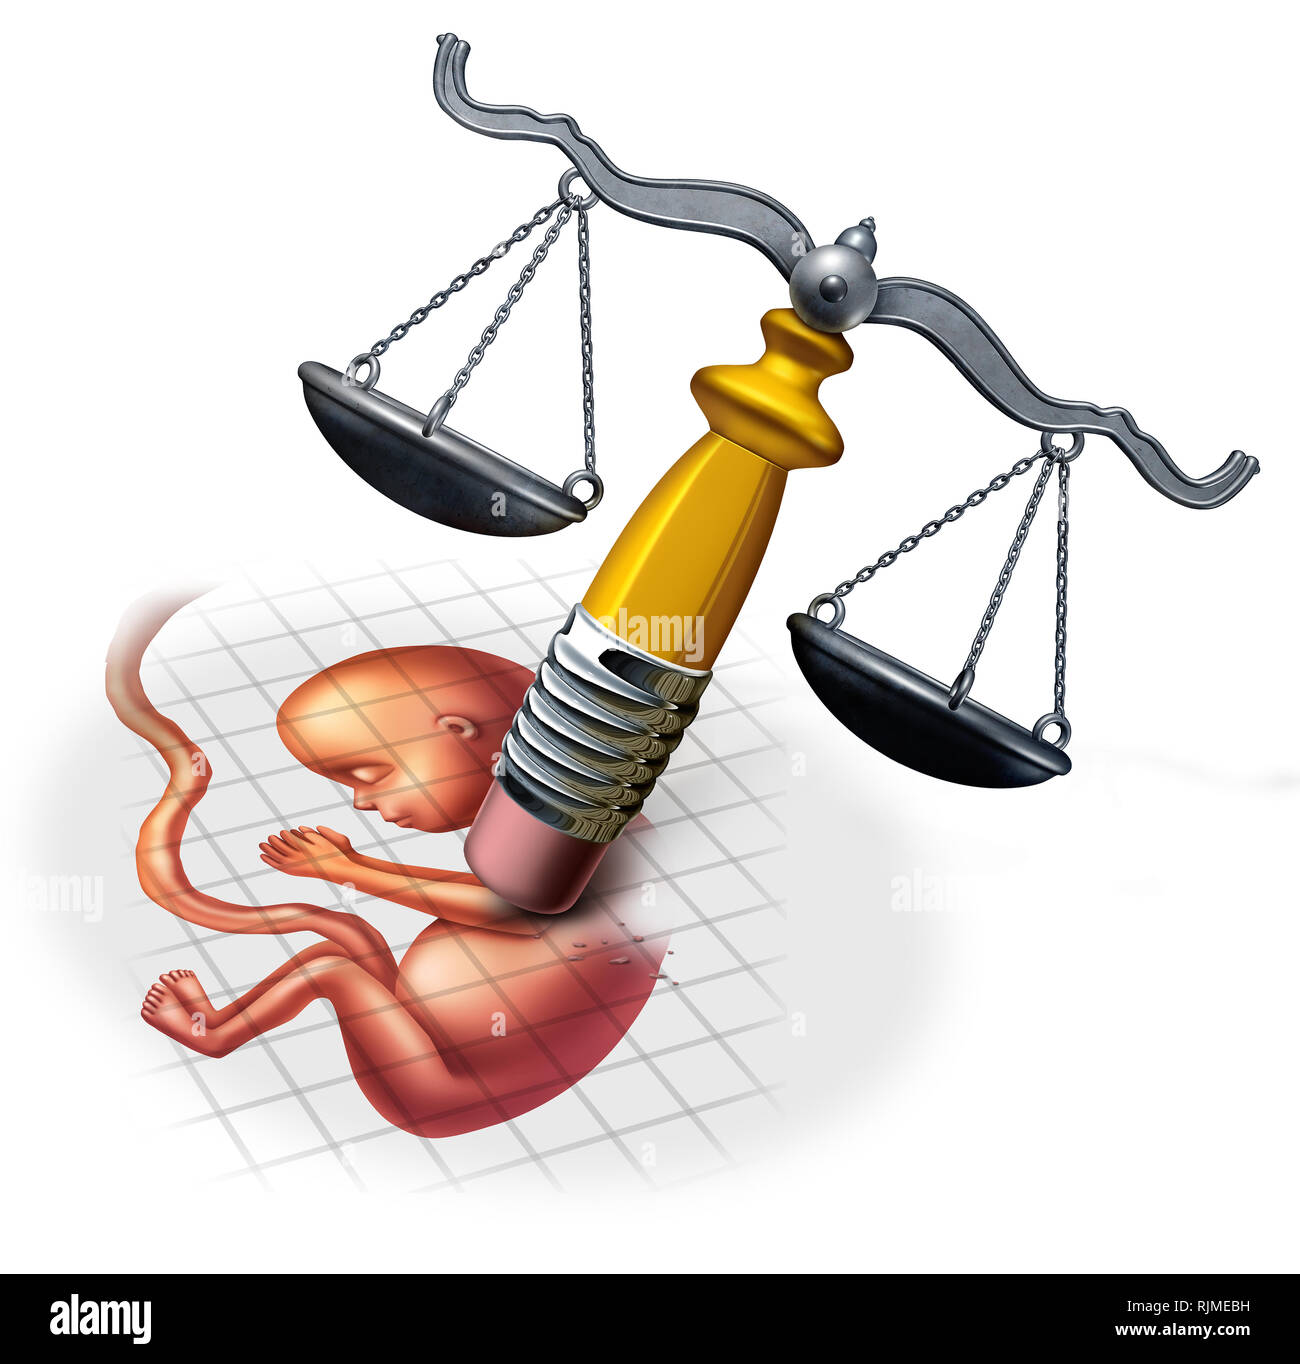 Abtreibungsrecht Konzepte und sozialen Ethik im Hinblick auf die späten Bezeichnung Schwangerschaft als Fötus durch eine Justiz mit 3D-Illustration Elemente gelöscht werden. Stockfoto